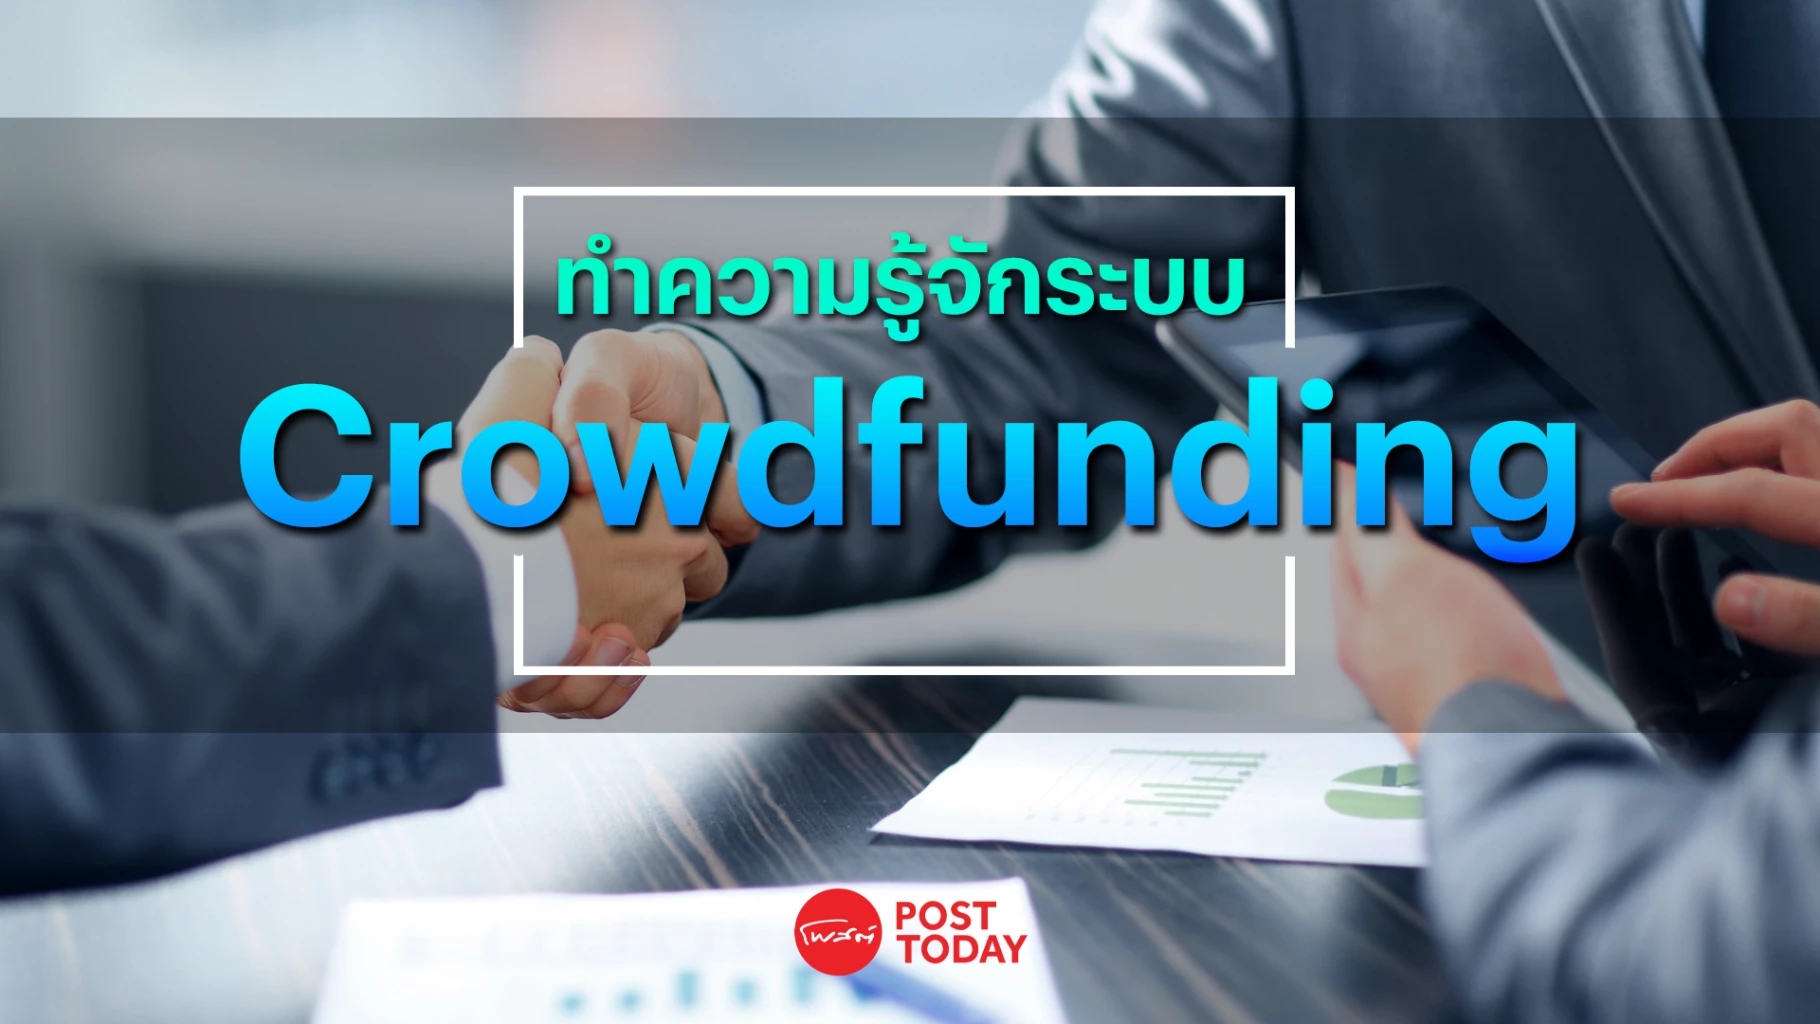 “Crowdfunding” ทางเลือกแหล่งเงินทุนของ SME